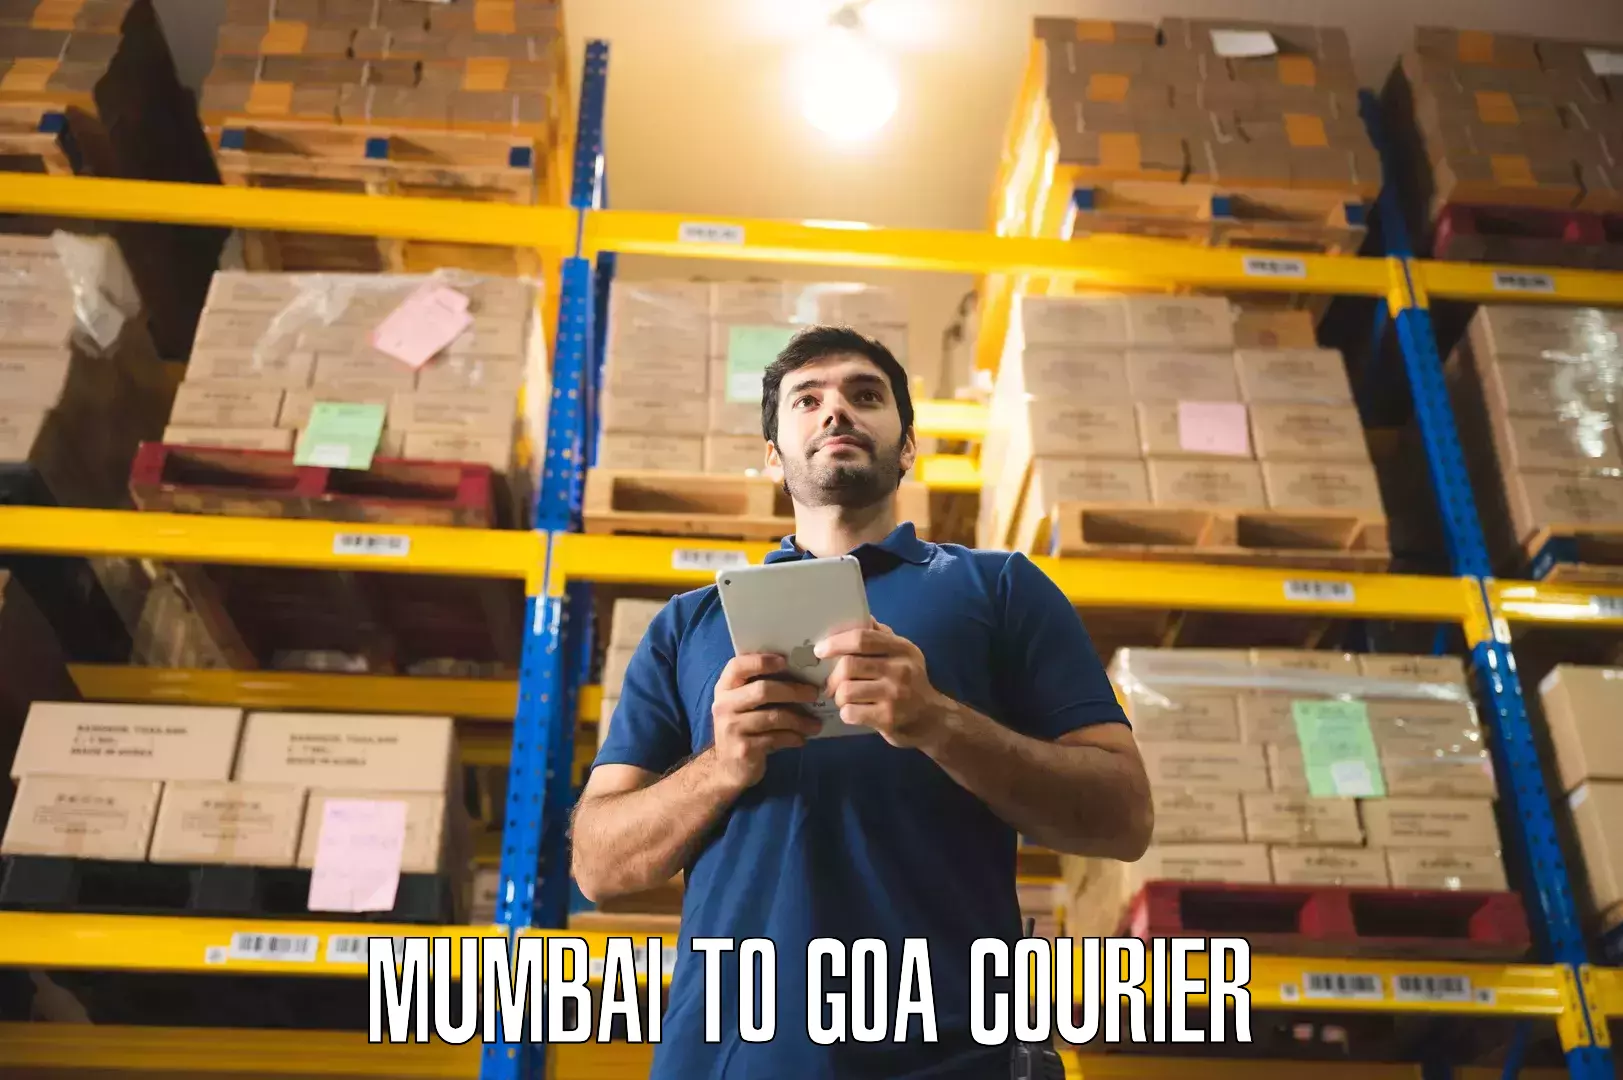 Expert household movers Mumbai to Goa